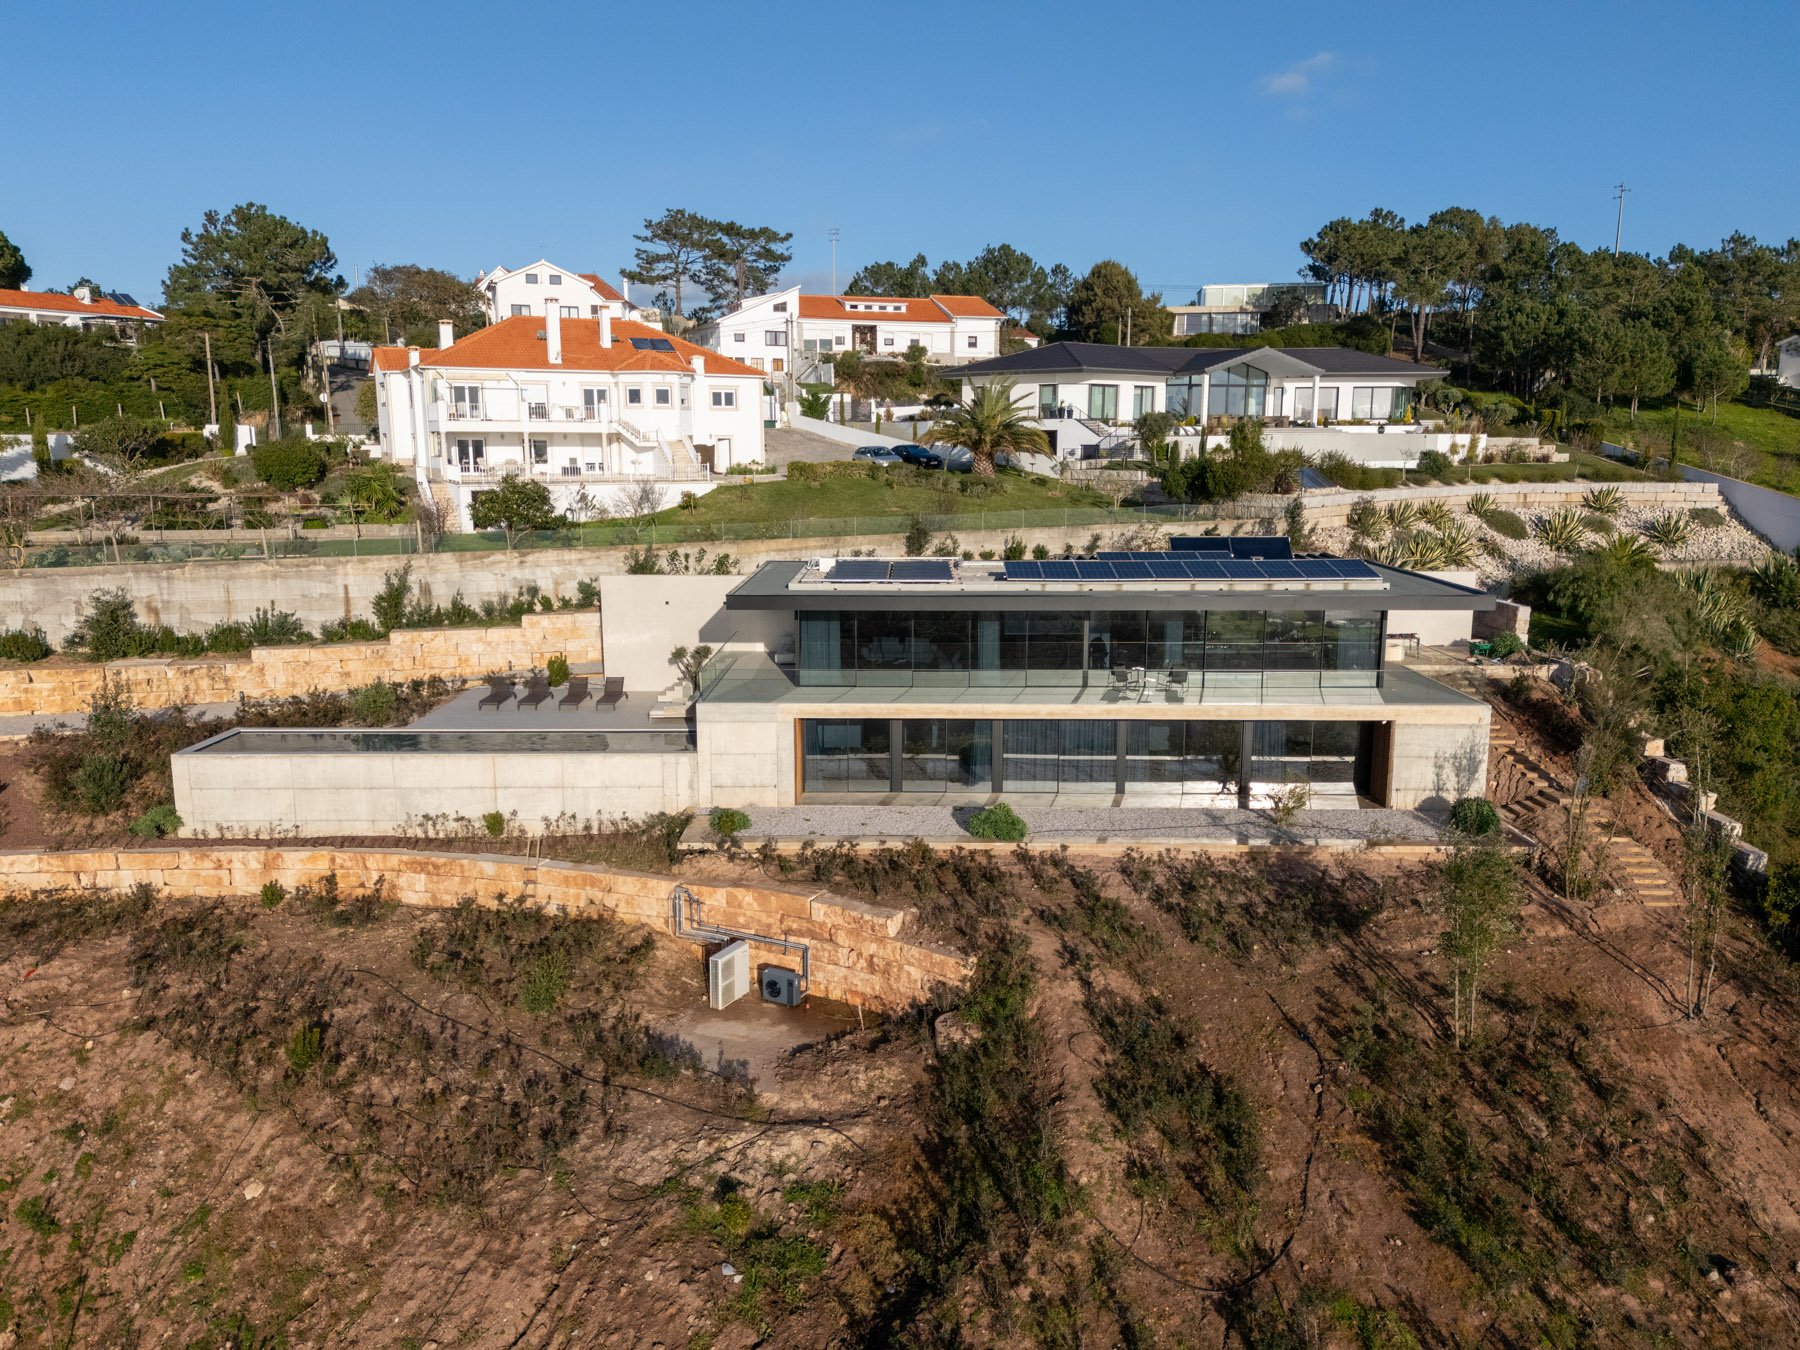  Casa Garejau em Foz do Arelho, Caldas da Rainha - Pascal Construction. Foto: Joas Souza - Fotografo de Arquitetura 